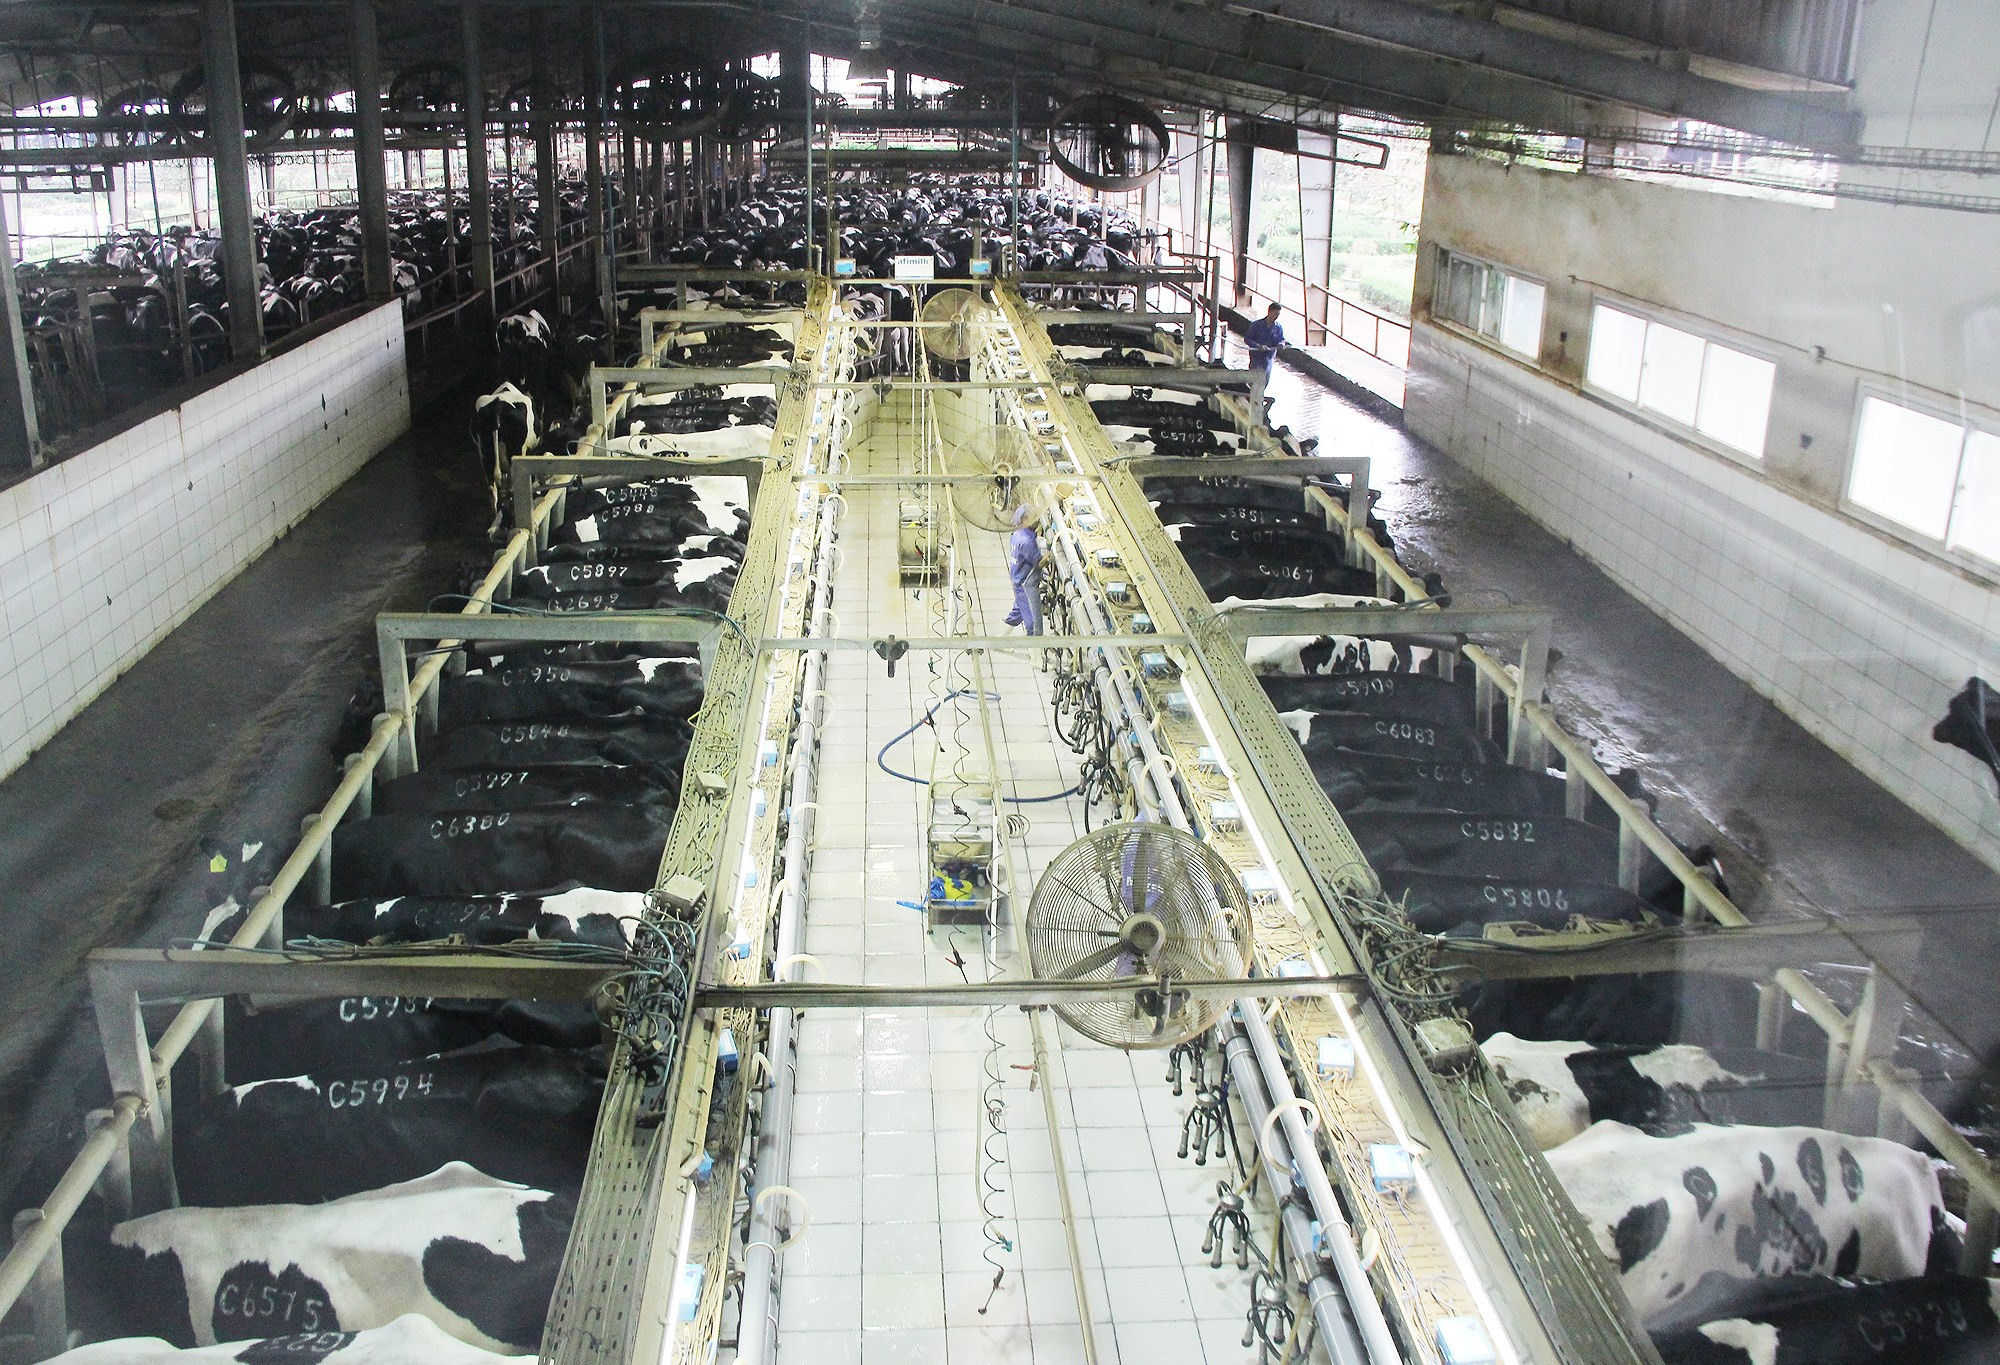 Trang trại bò sữa TH hiện có quy mô hơn 45.000 com